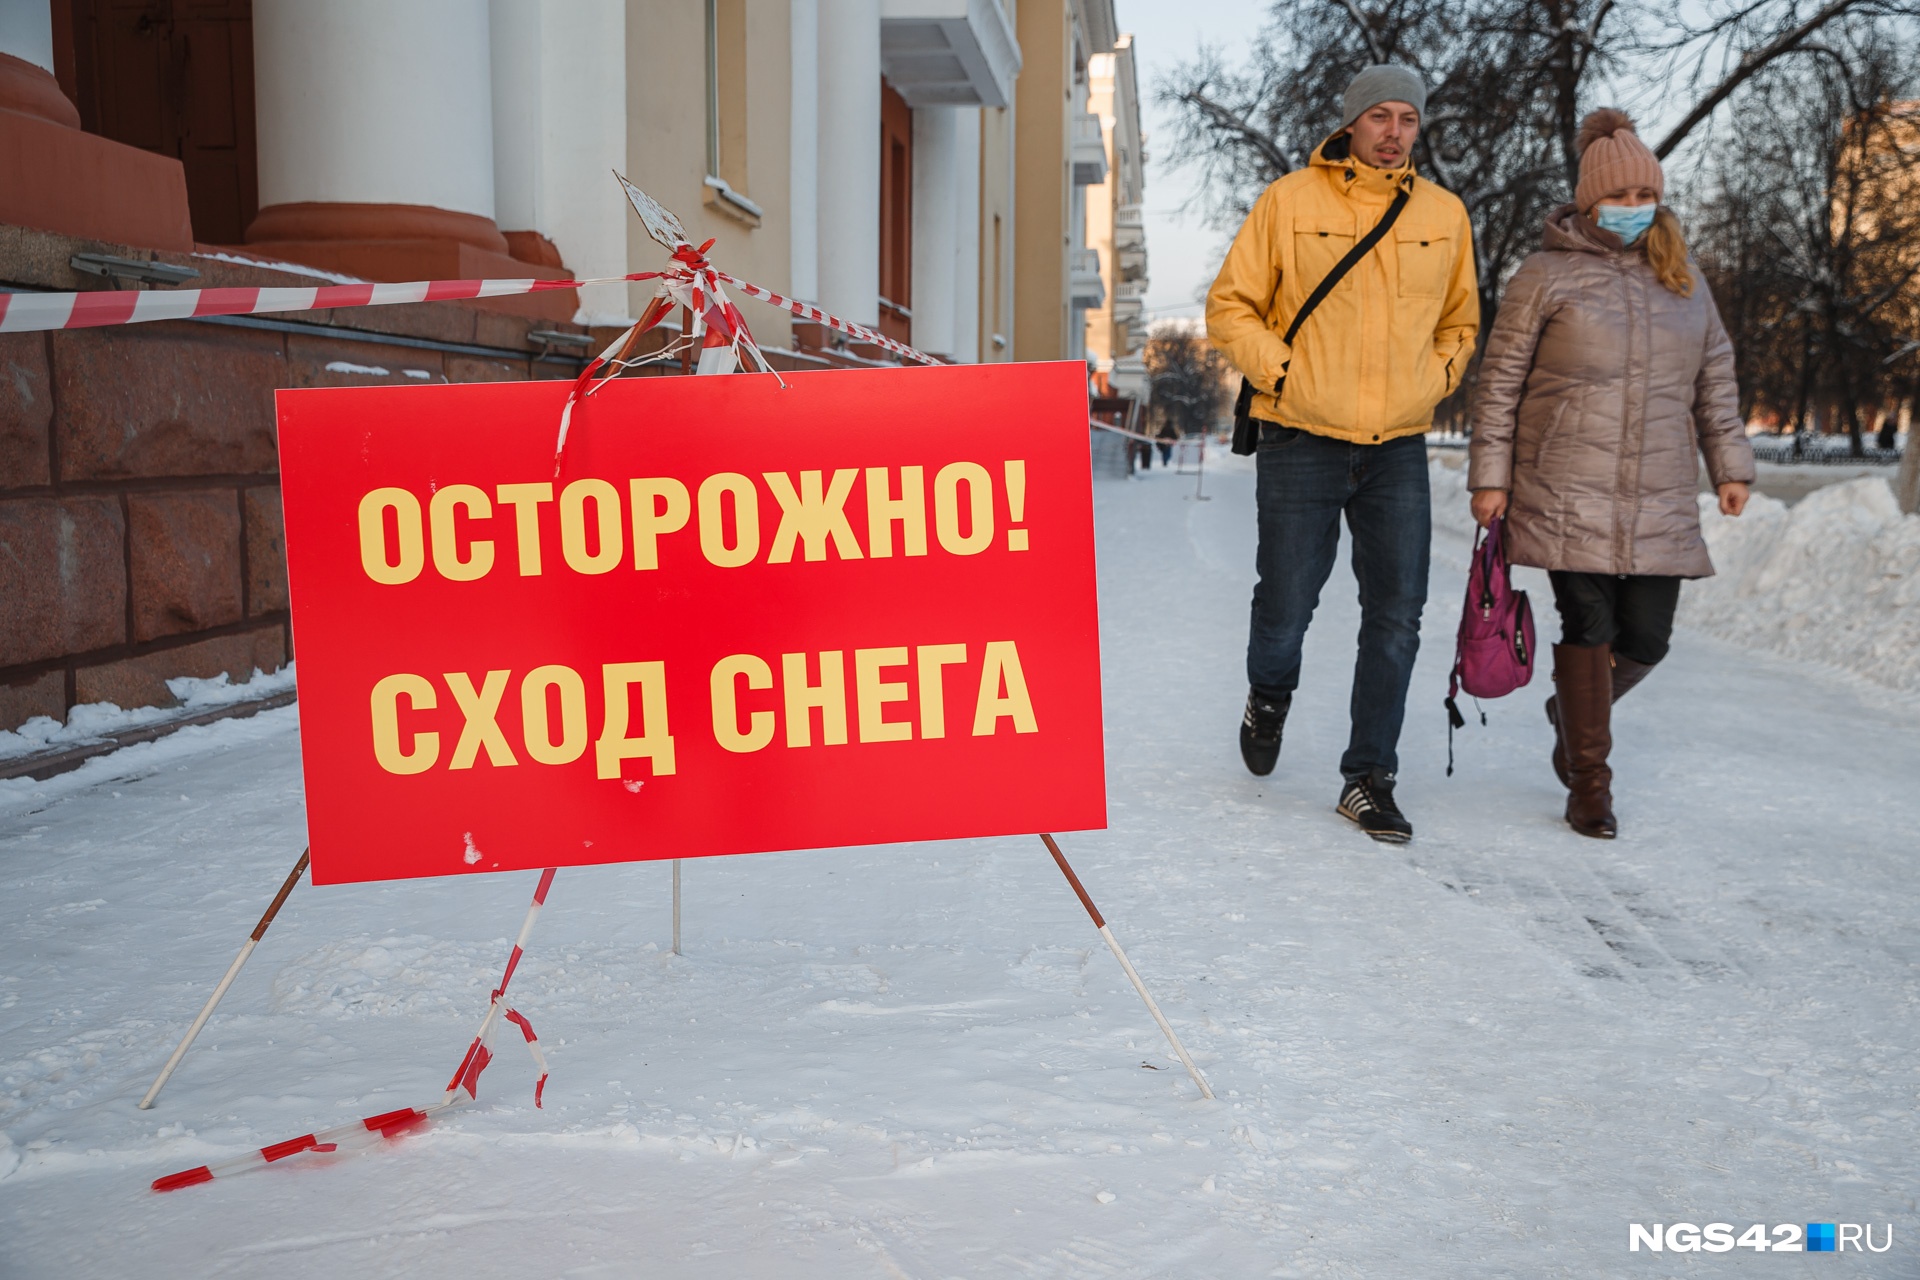 Во время митинга в поддержку Навального в центре Кемерово усердно убирали снег. Но так и не убрали